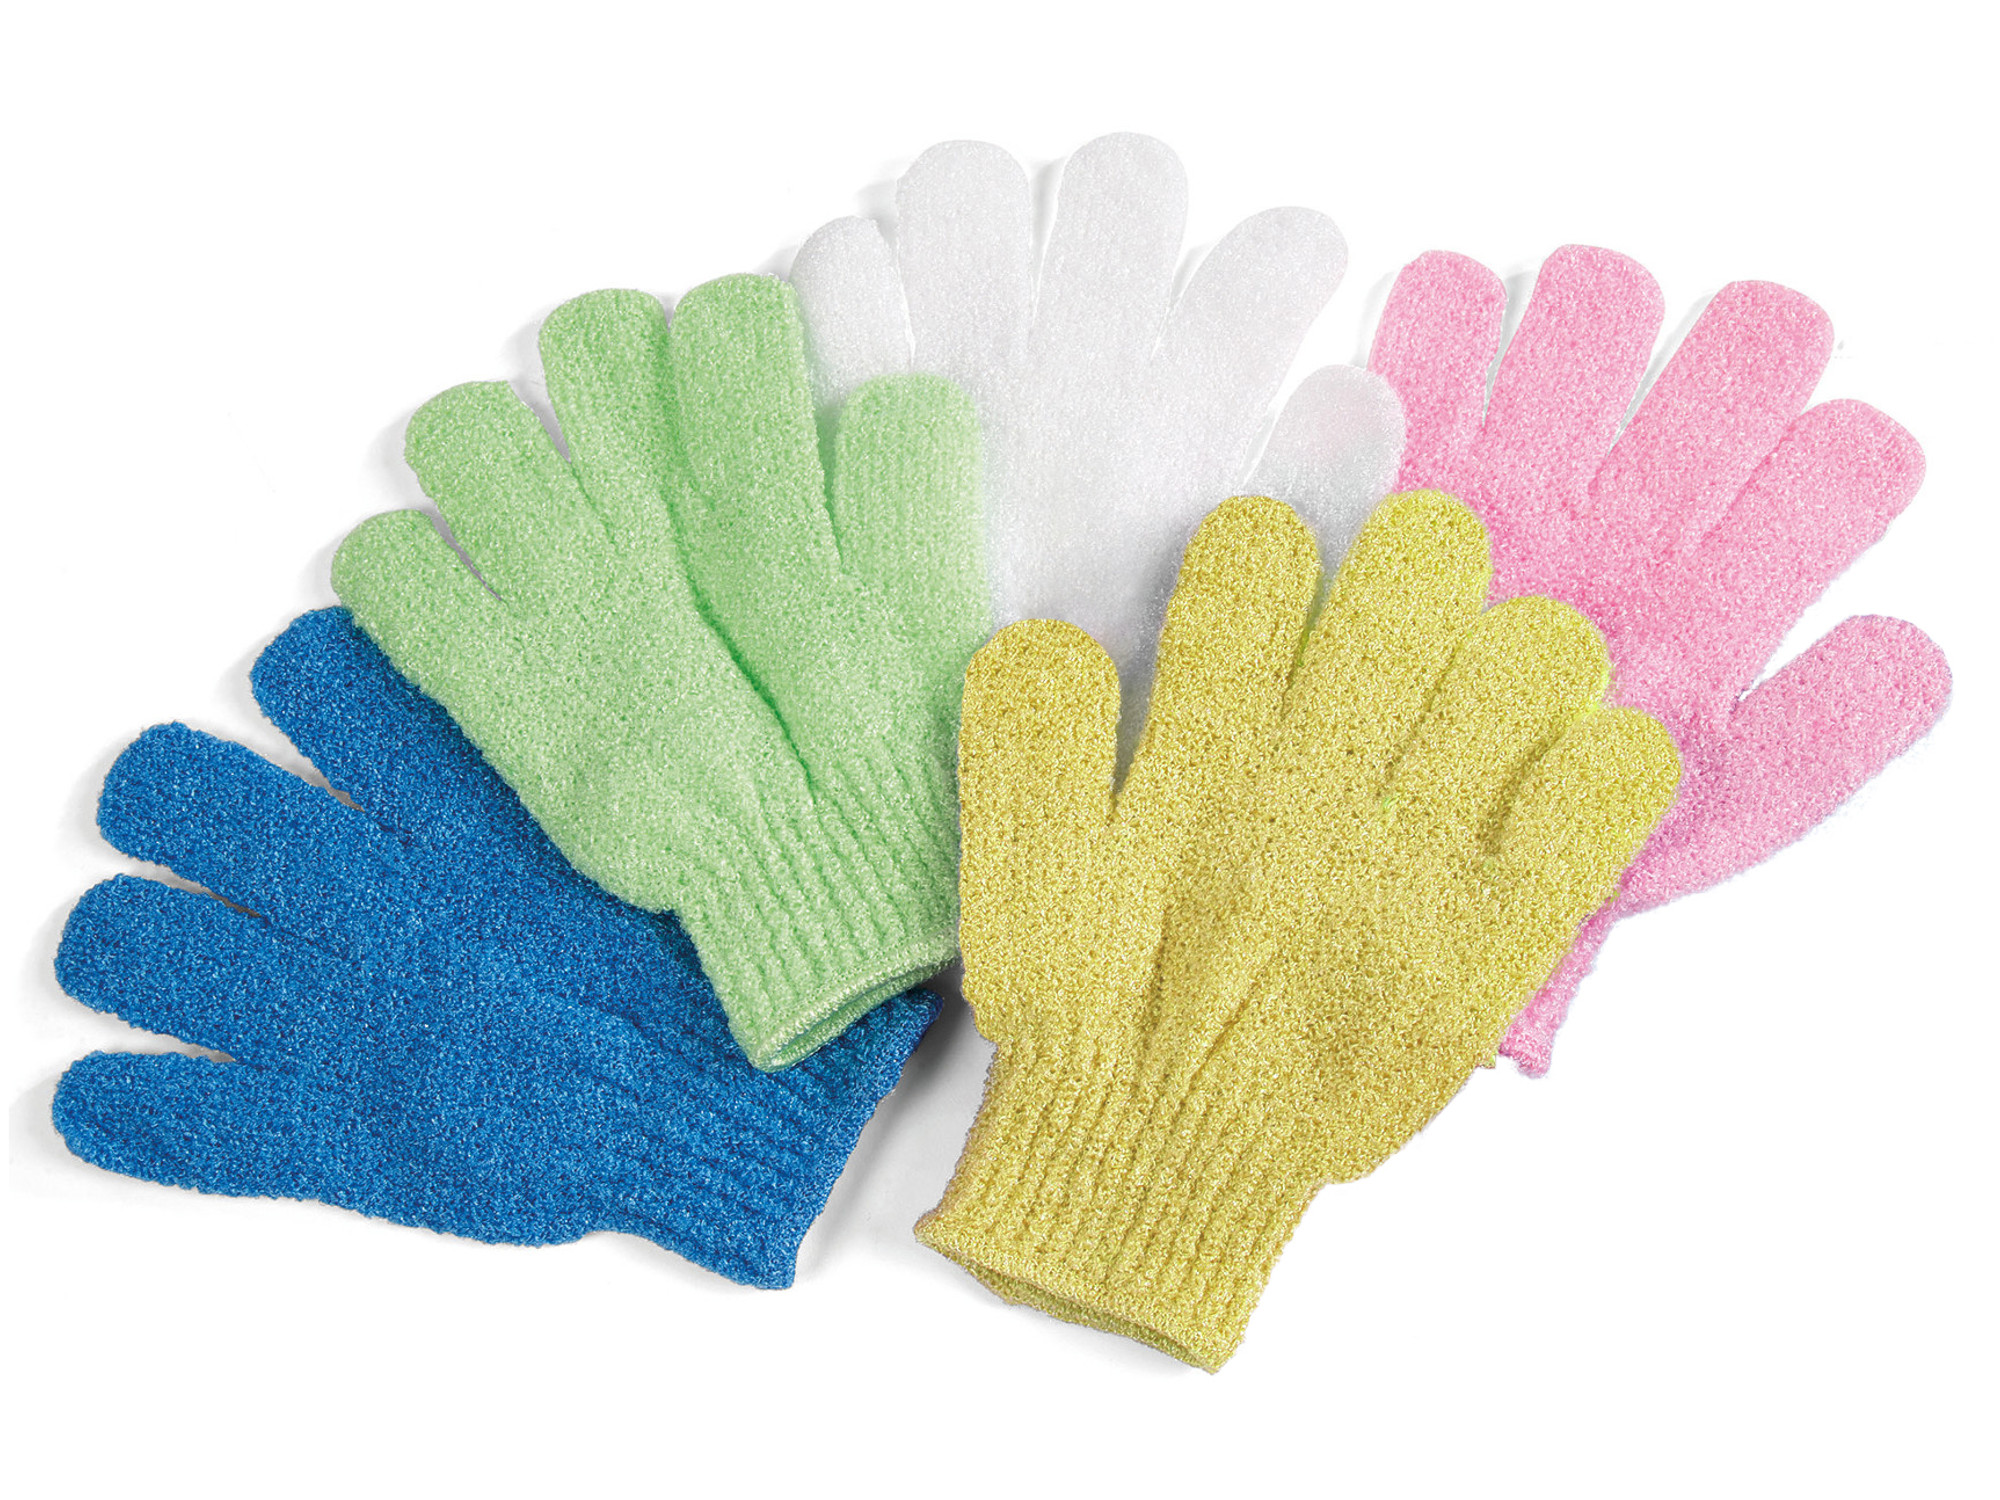 Koupelové exfoliační rukavice Sibel Baleno - různé barvy - 1 pár (0906041)